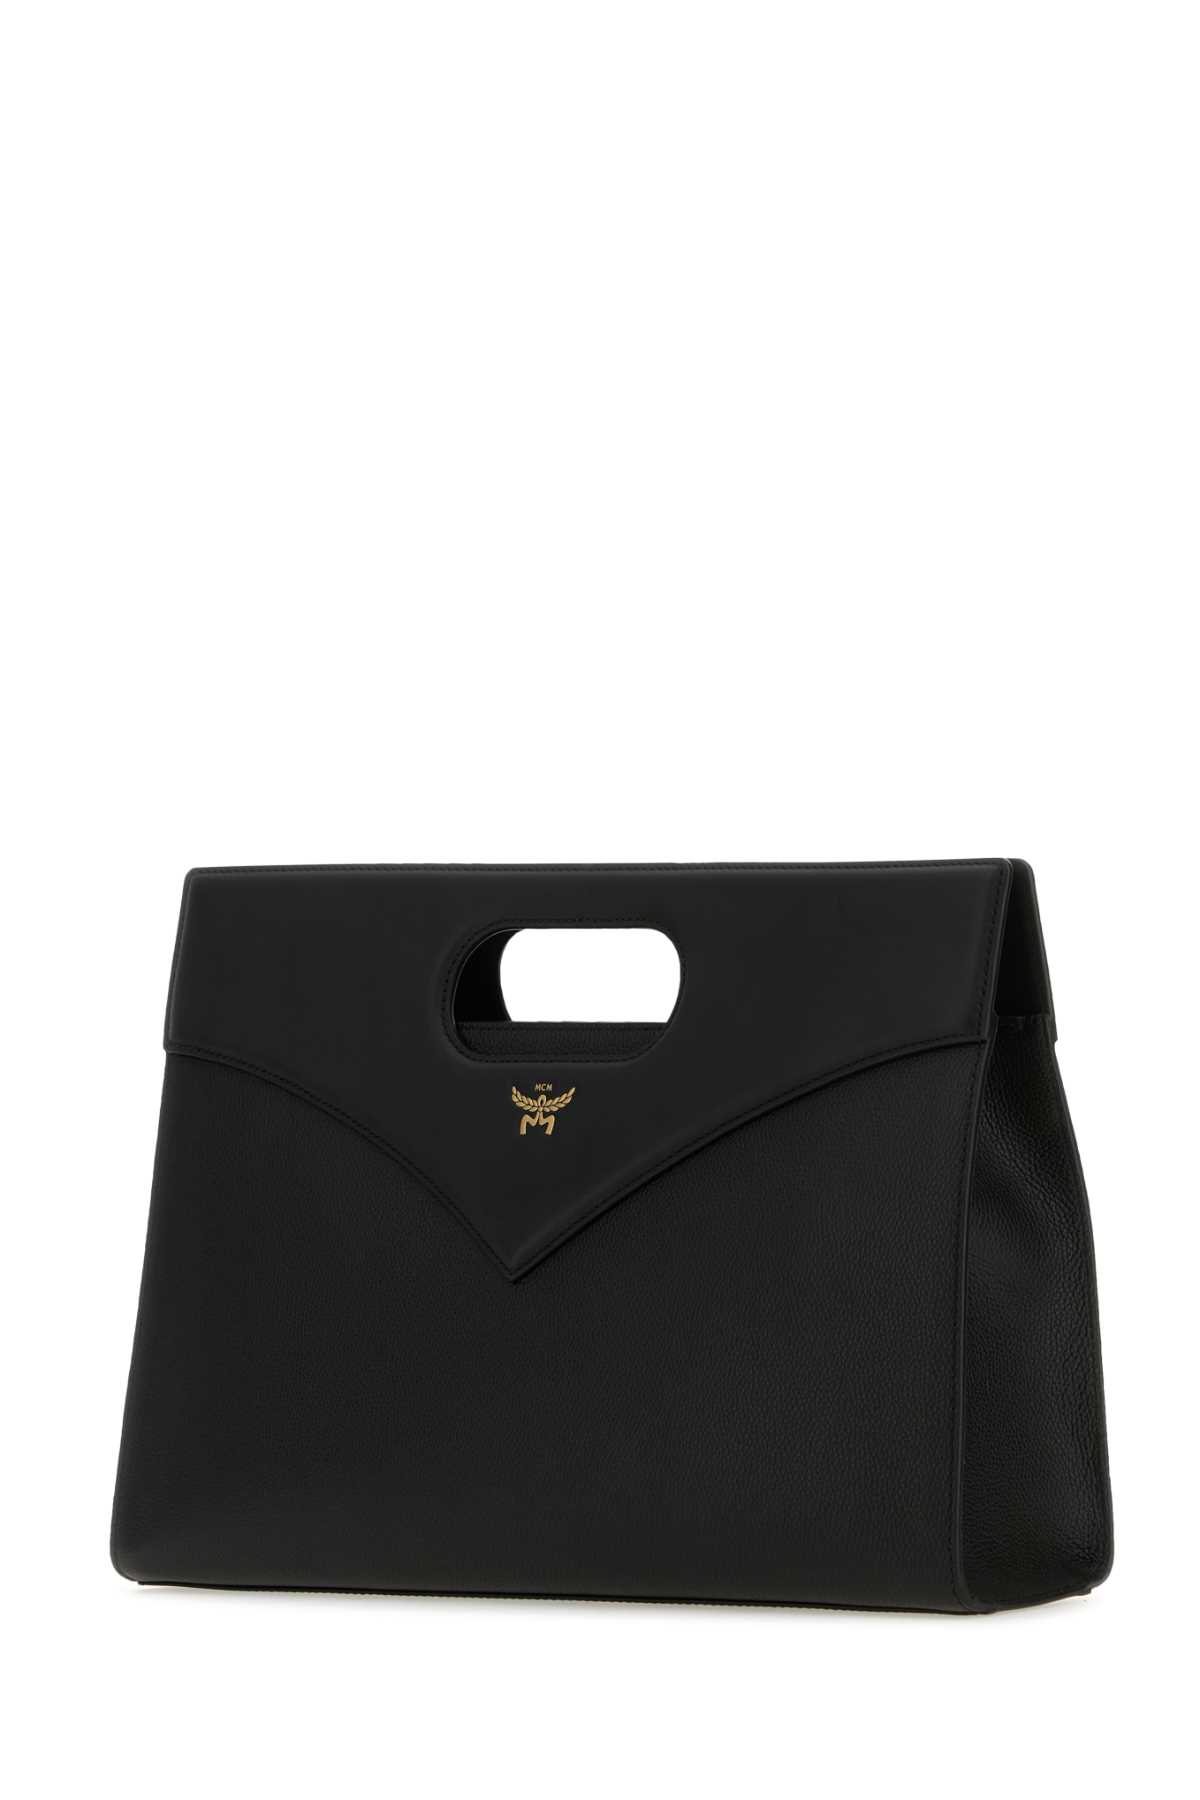 Mcm Black Leather Diamond Handbag